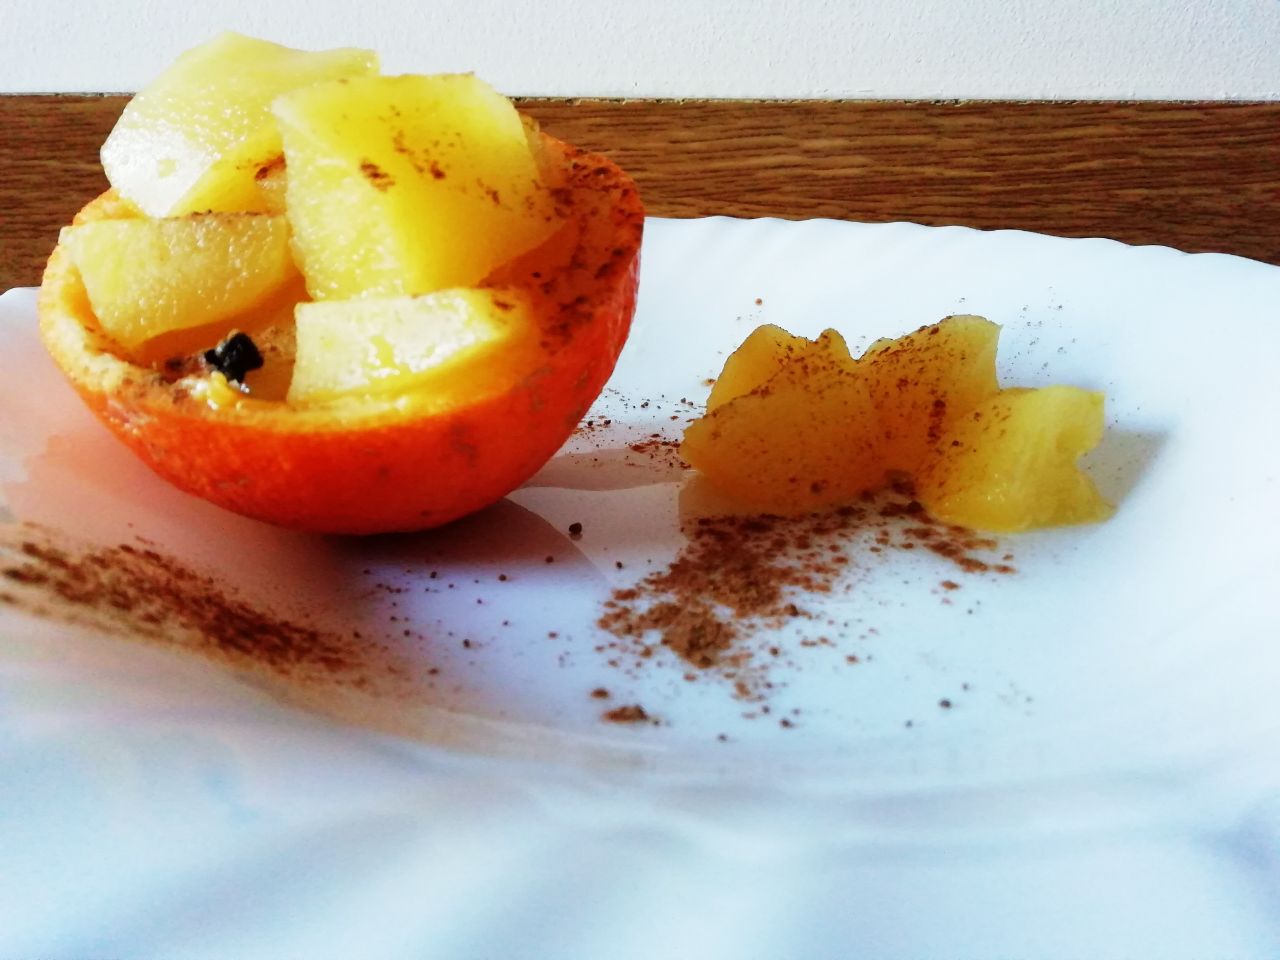 Dolci a base di frutta: mela caramellata all'arancia con chiodi di garofano e cannella!